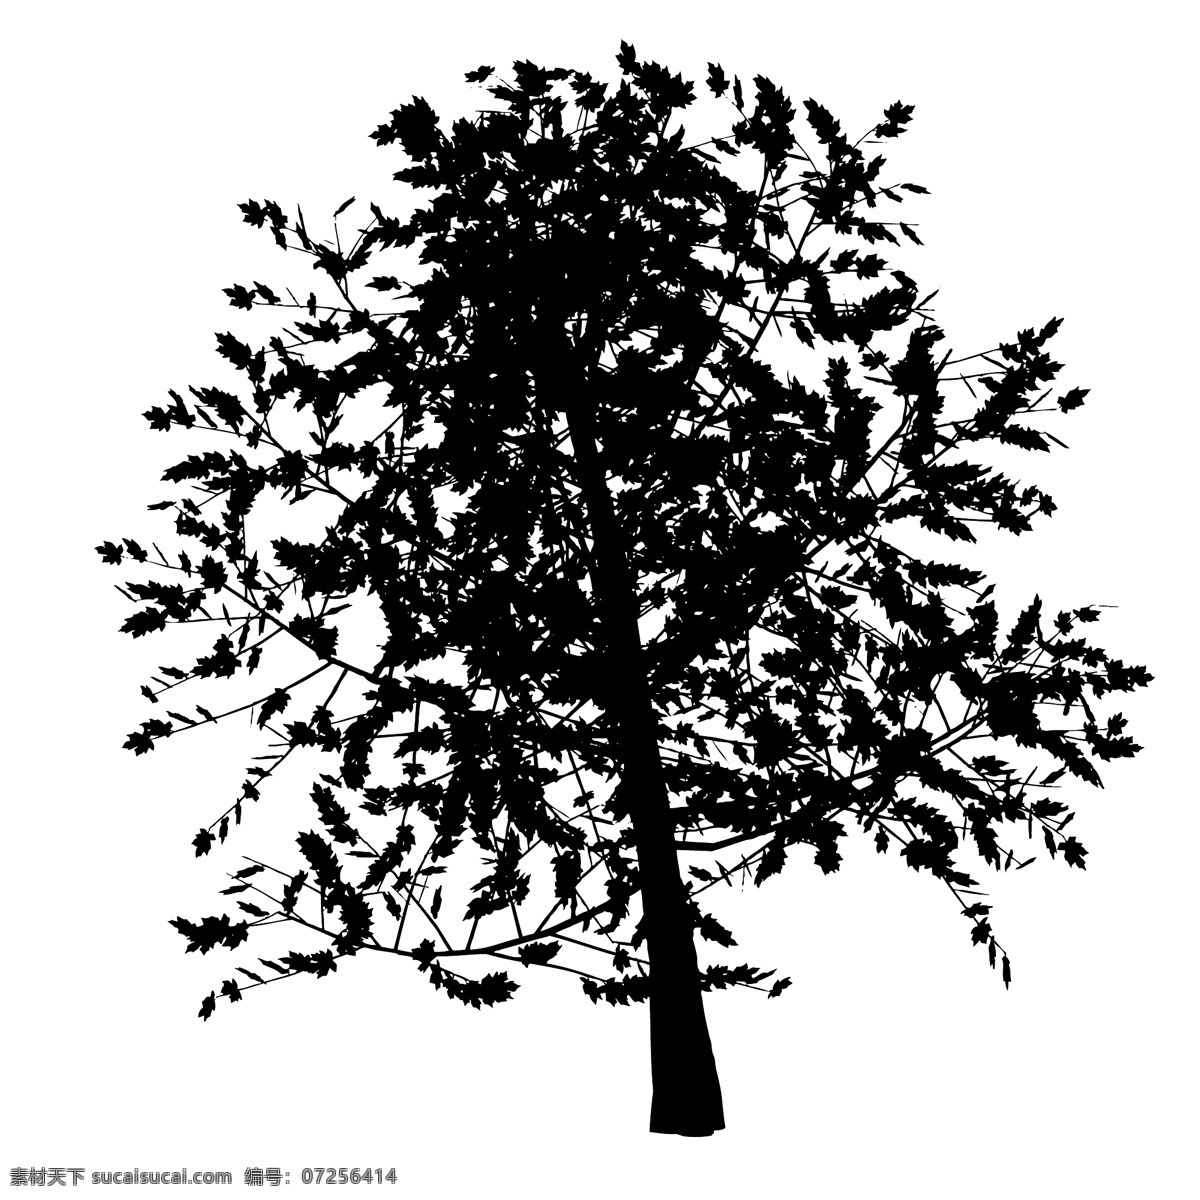 黑色 植物 树木 剪影 树枝 树干 涂鸦 图案 简约 绘画 树叶 树苗 素描 椰子树